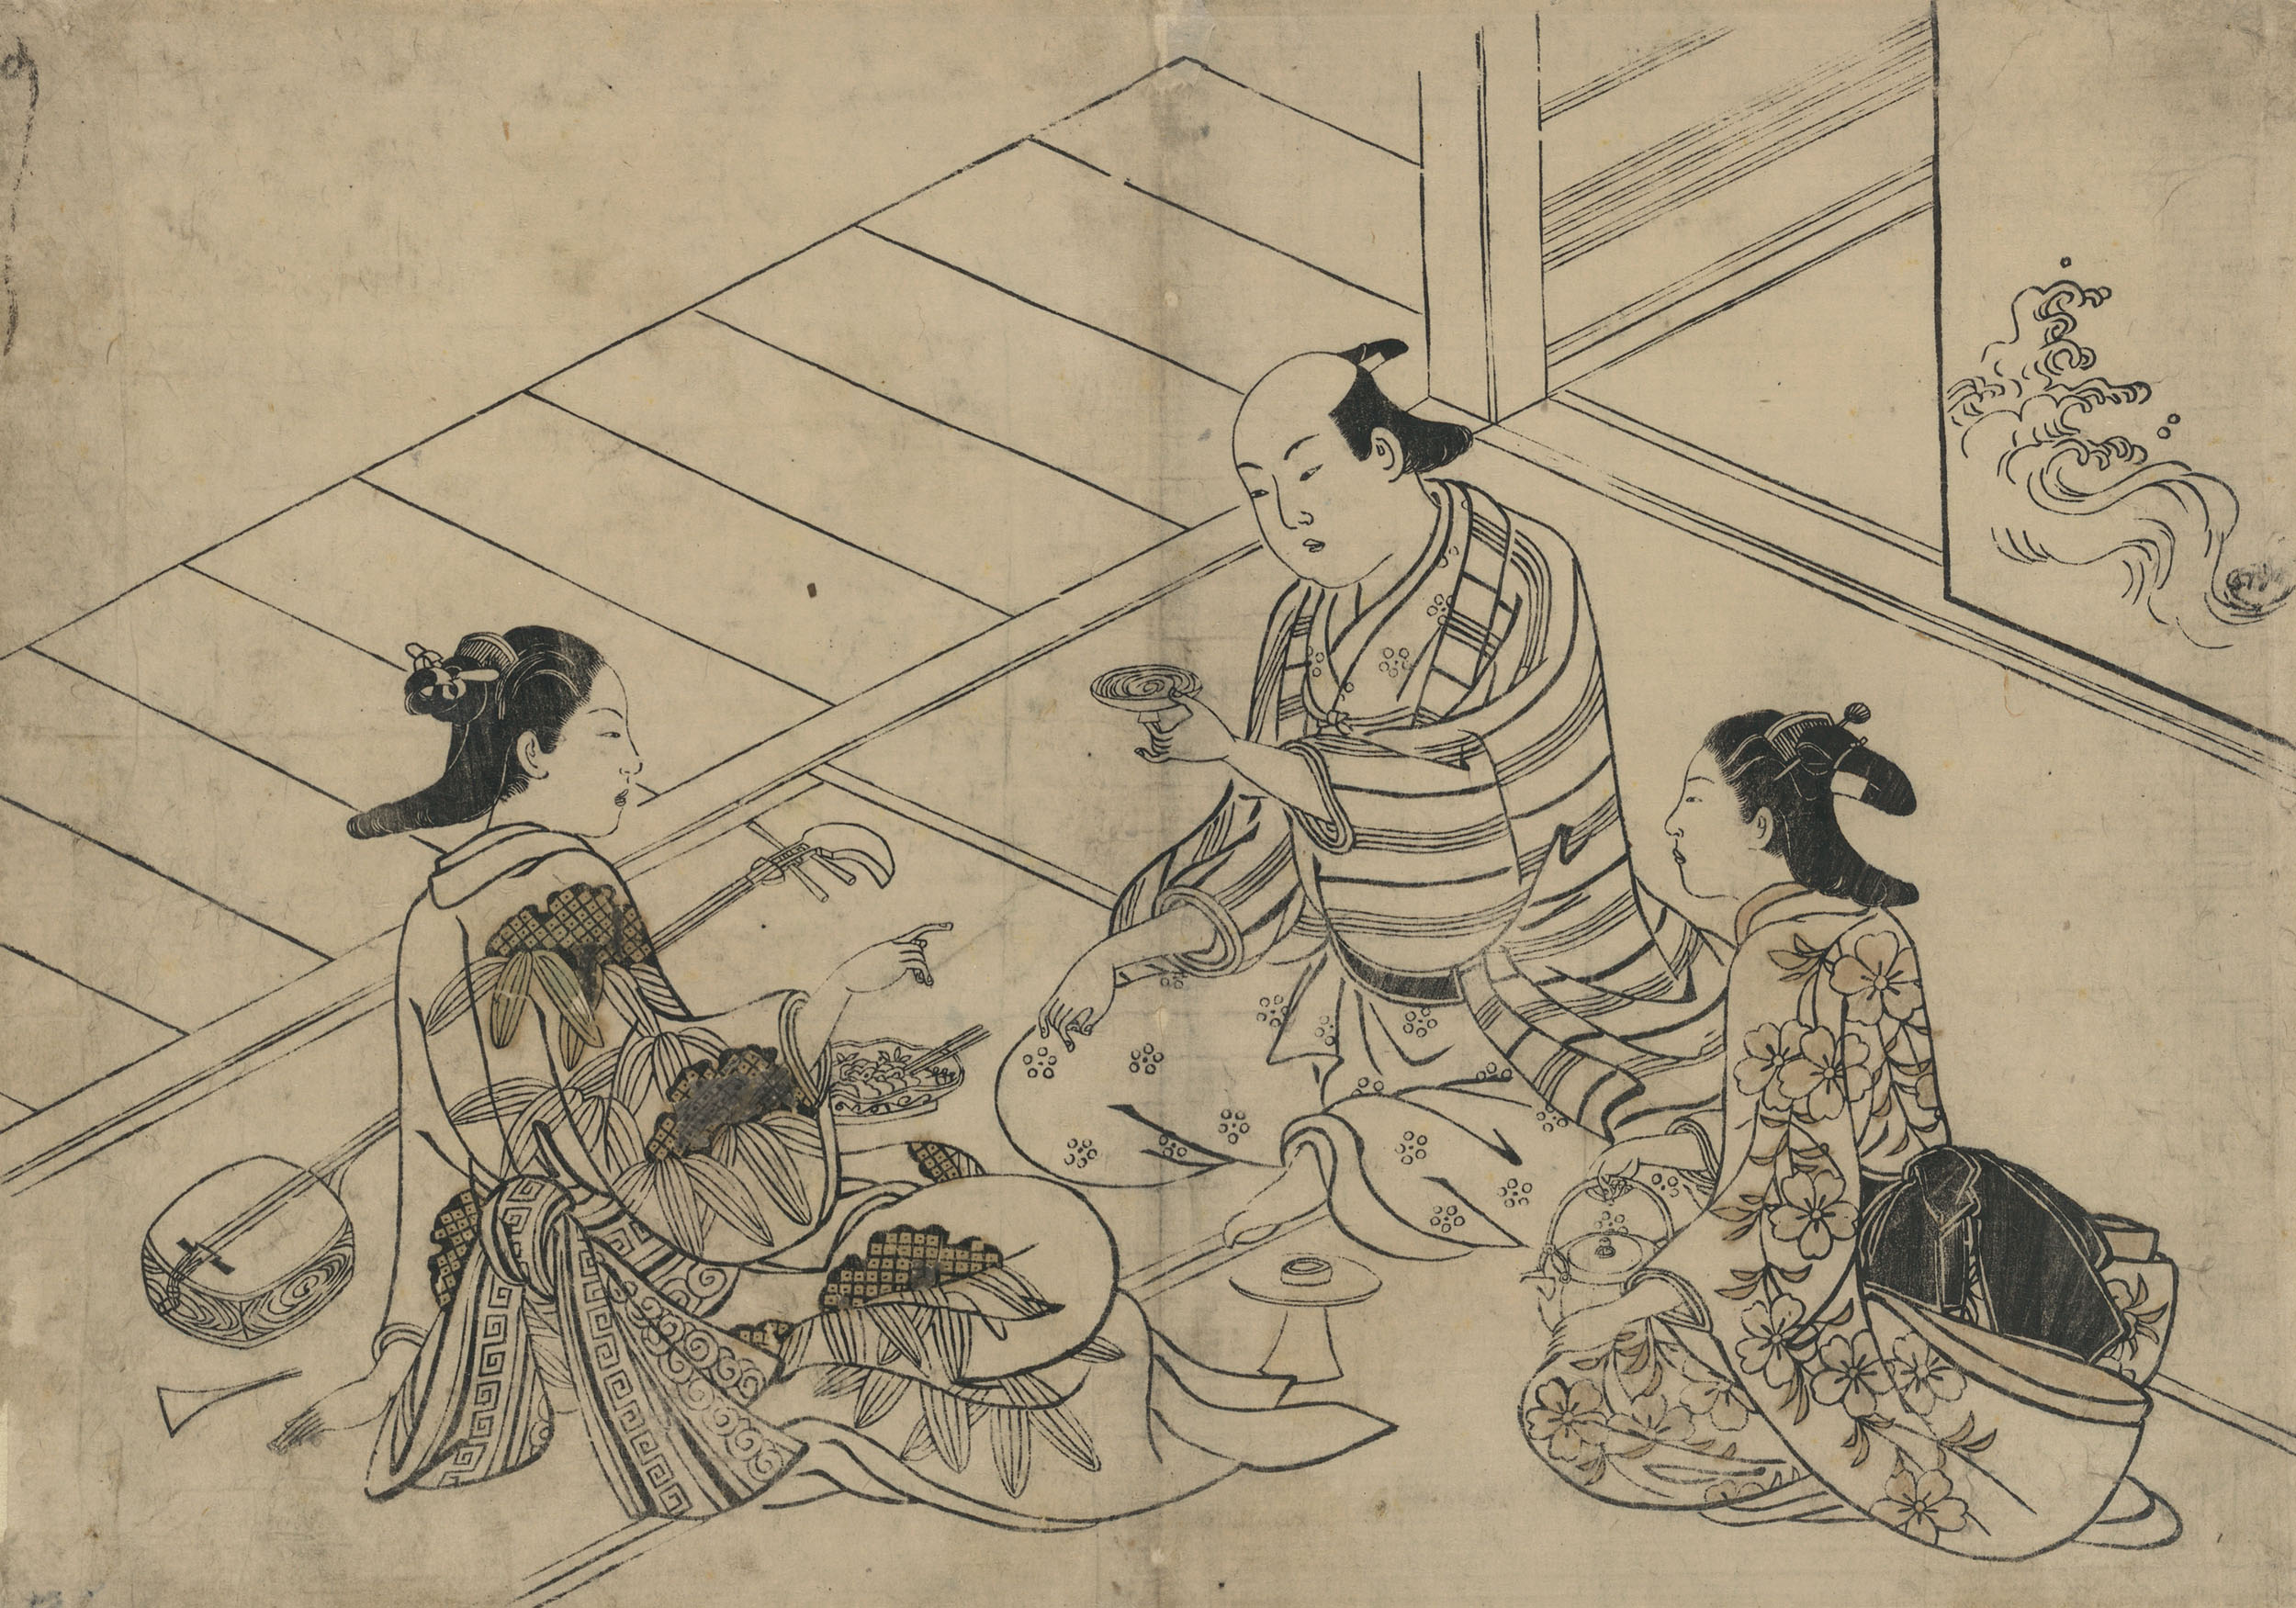 Нисикава Сукэнобу. "Мужчина с двумя гейшами". Между 1716 и 1742.